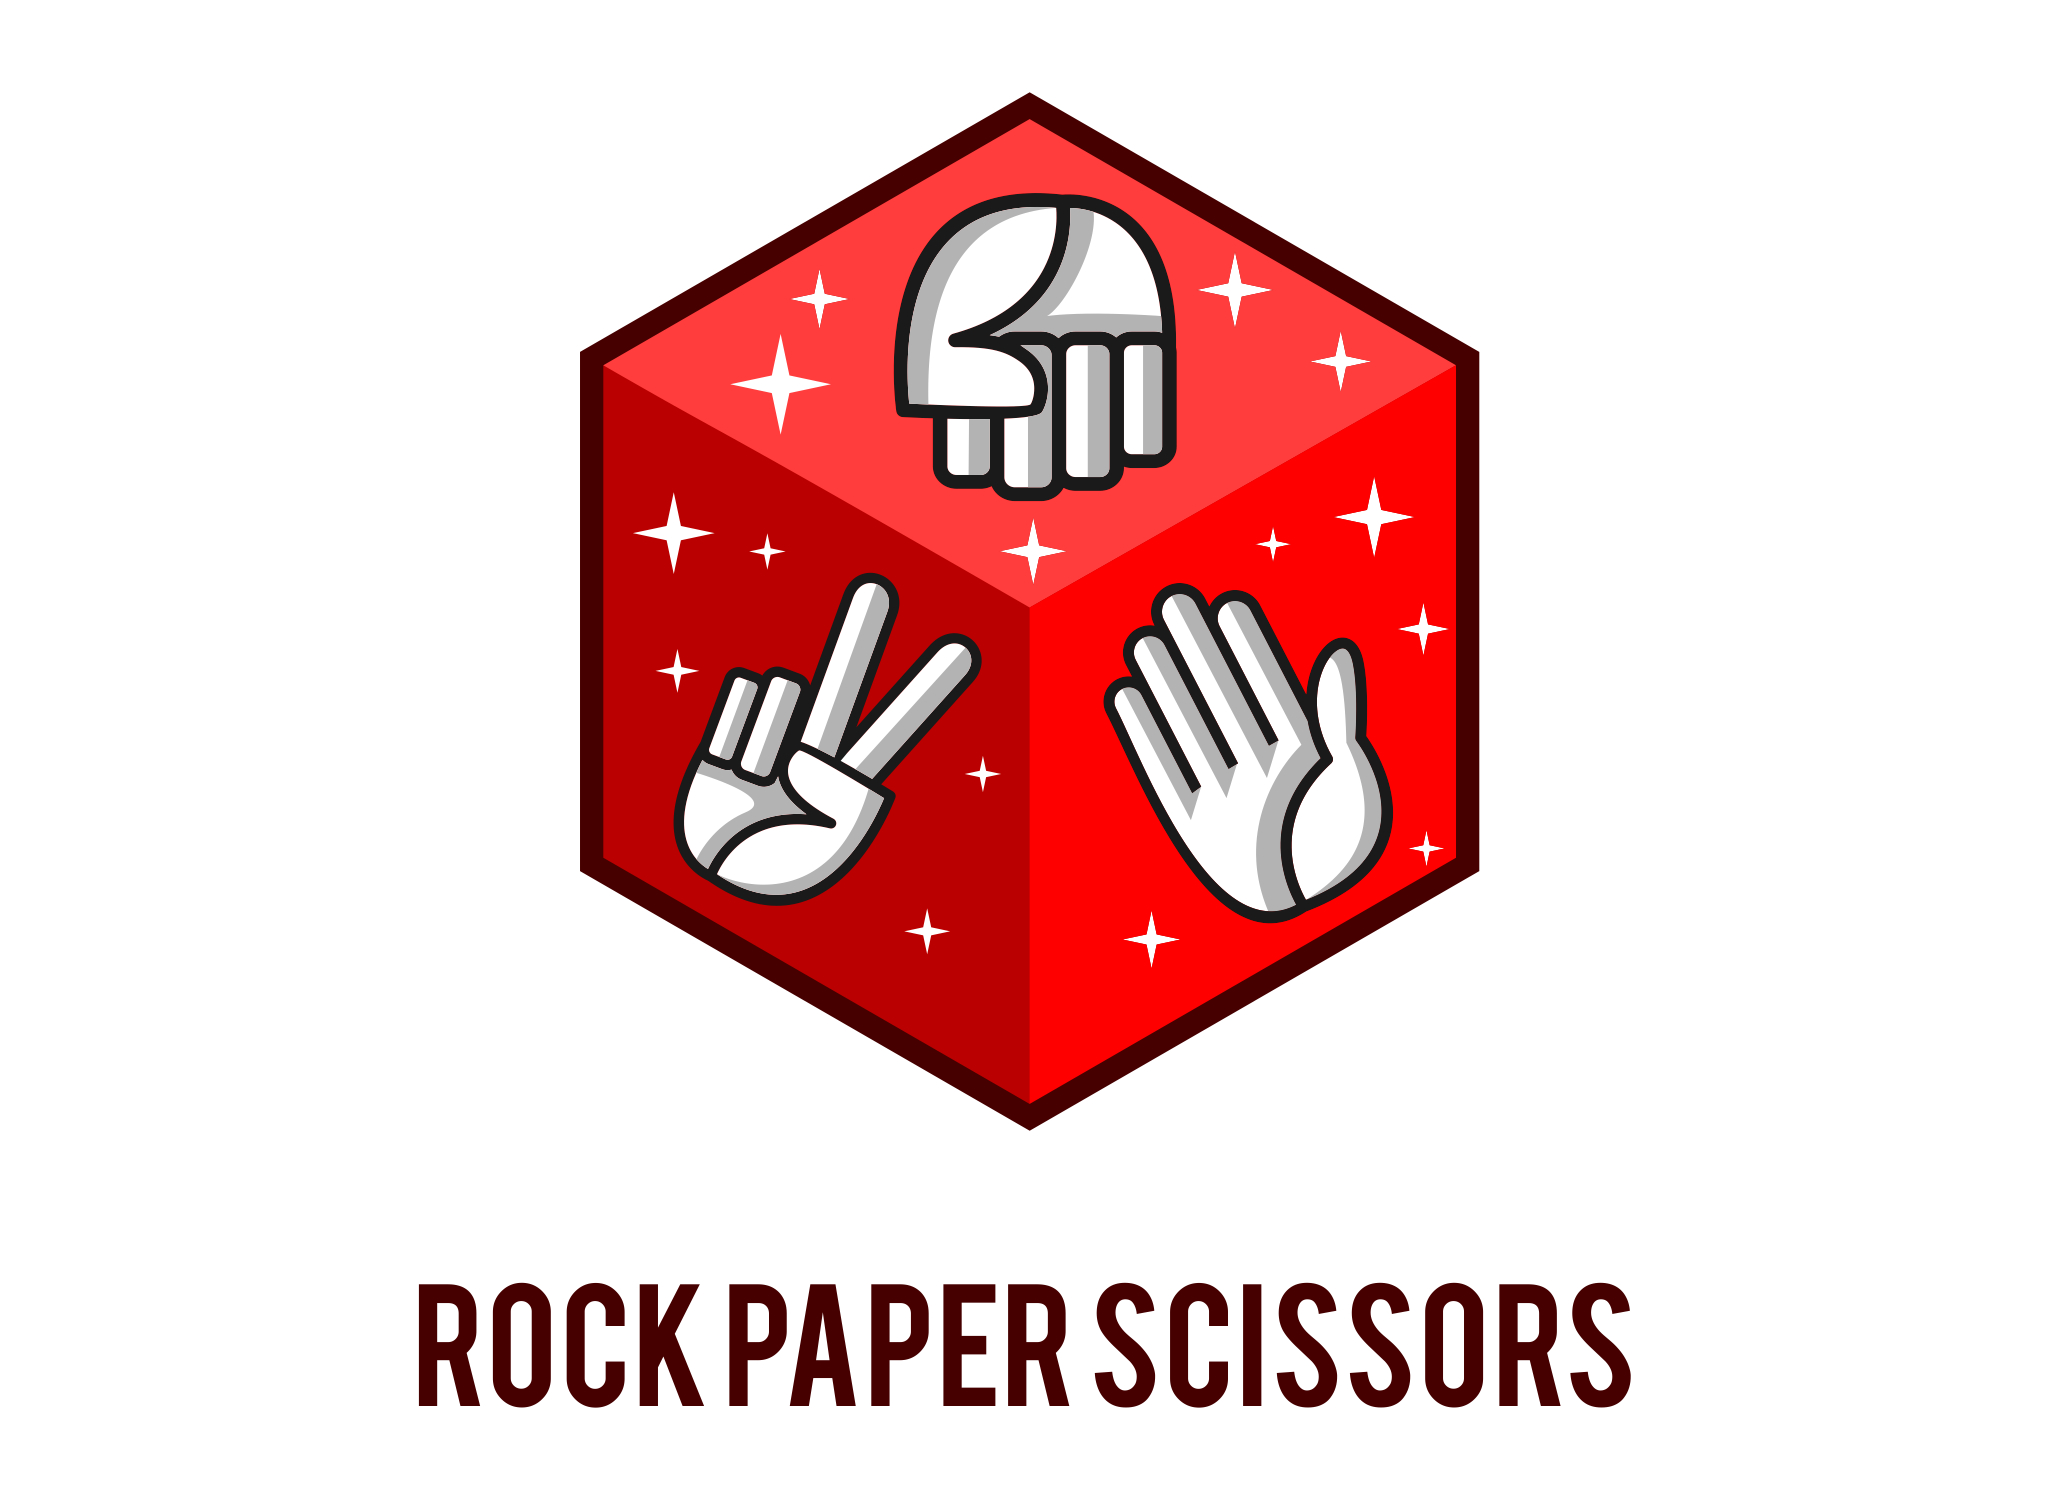 Rock paper scissors vk